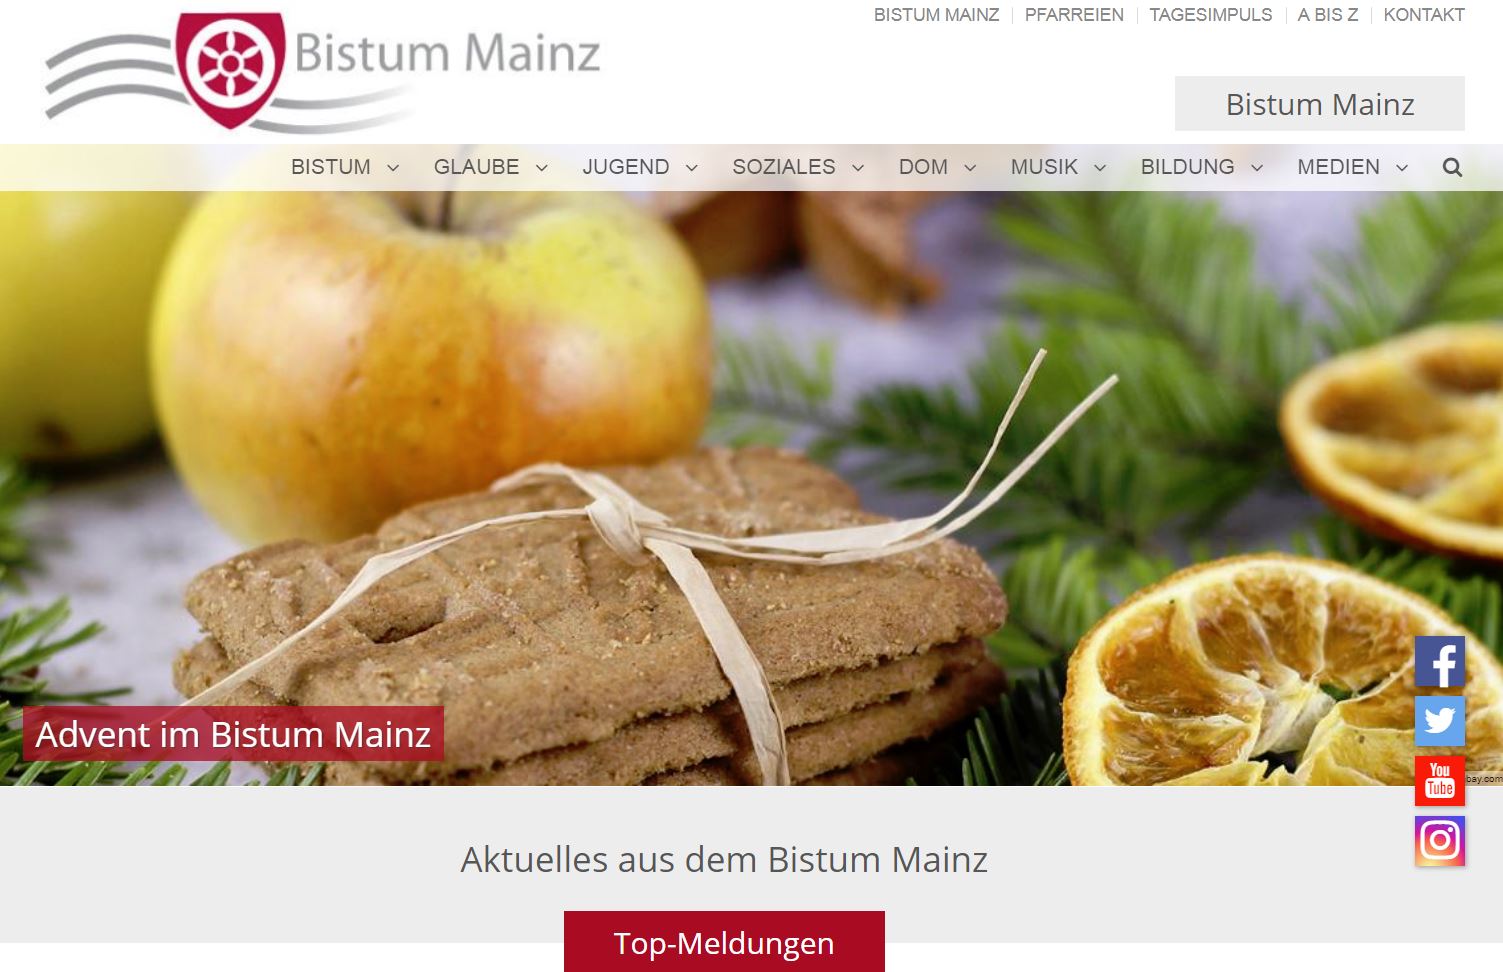 Startseite bistummainz.de (c) Bistum Mainz